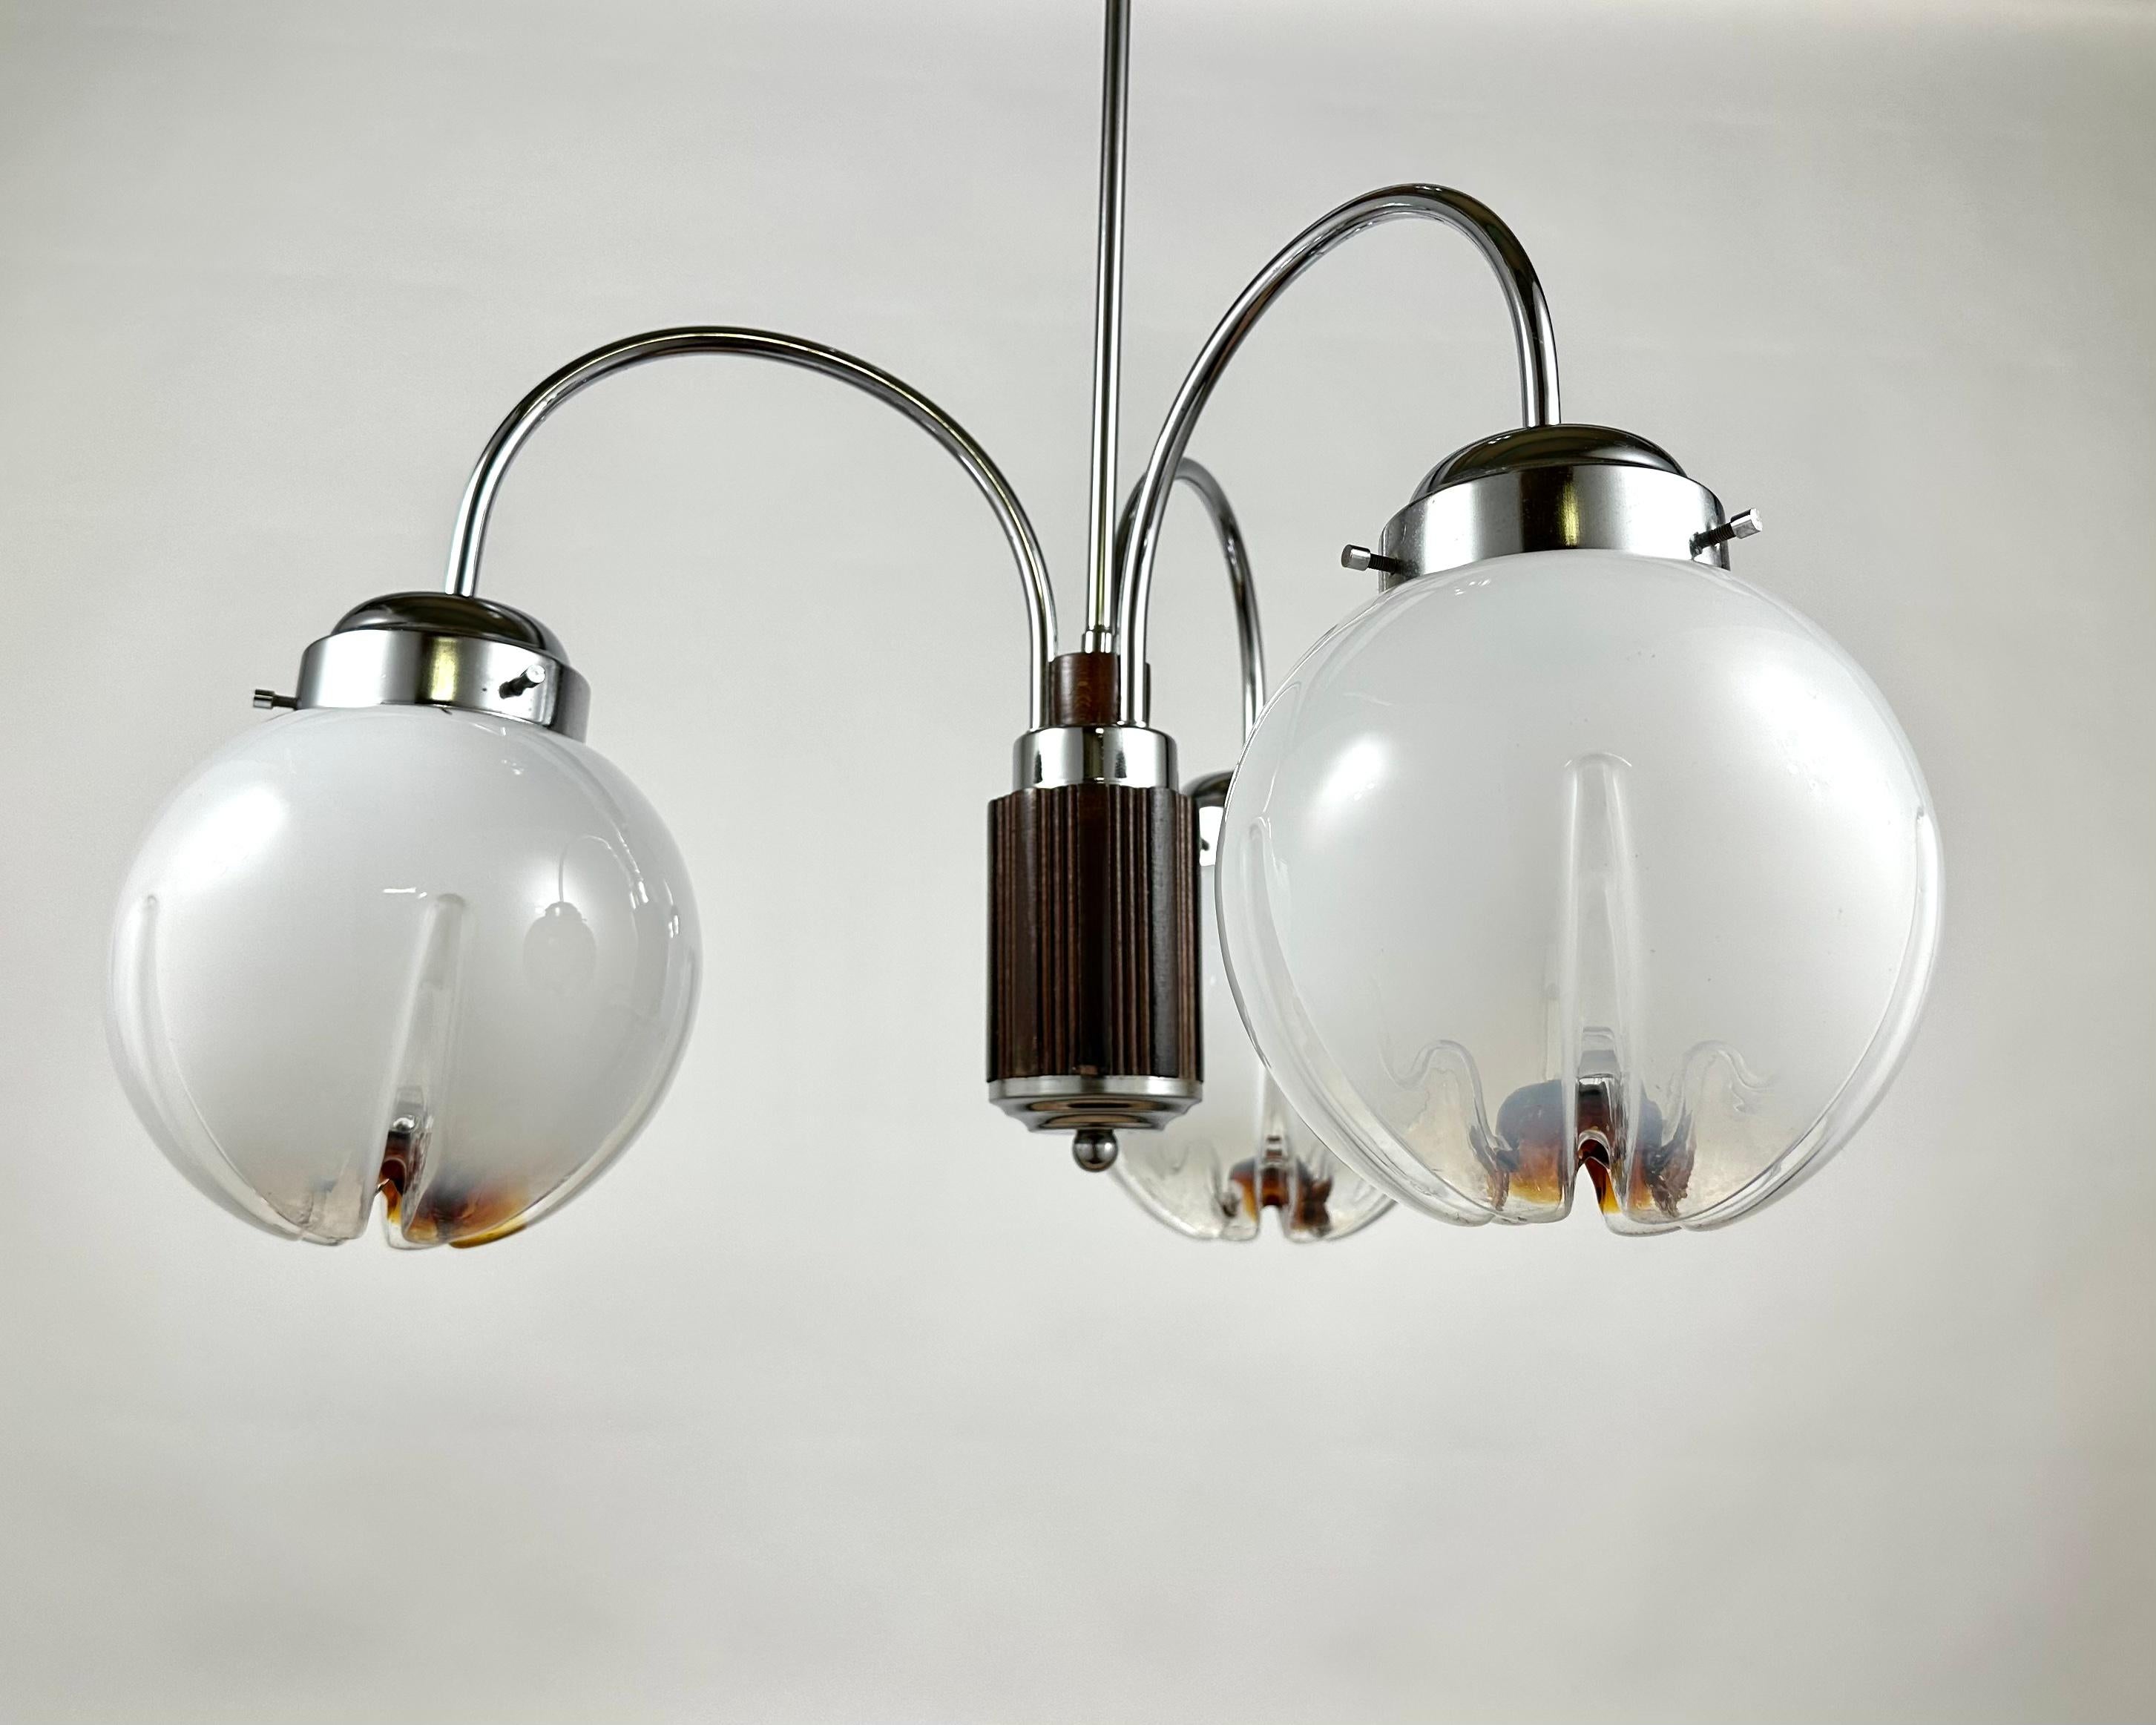 Lampe suspendue Design/One Murano, design italien, âge de l'espace. 1970s.

Un magnifique lustre réalisé par AV Mazzega avec du verre soufflé caractéristique de Murano.

Composée de pas moins de 3 sphères en verre, cette lampe illuminera n'importe